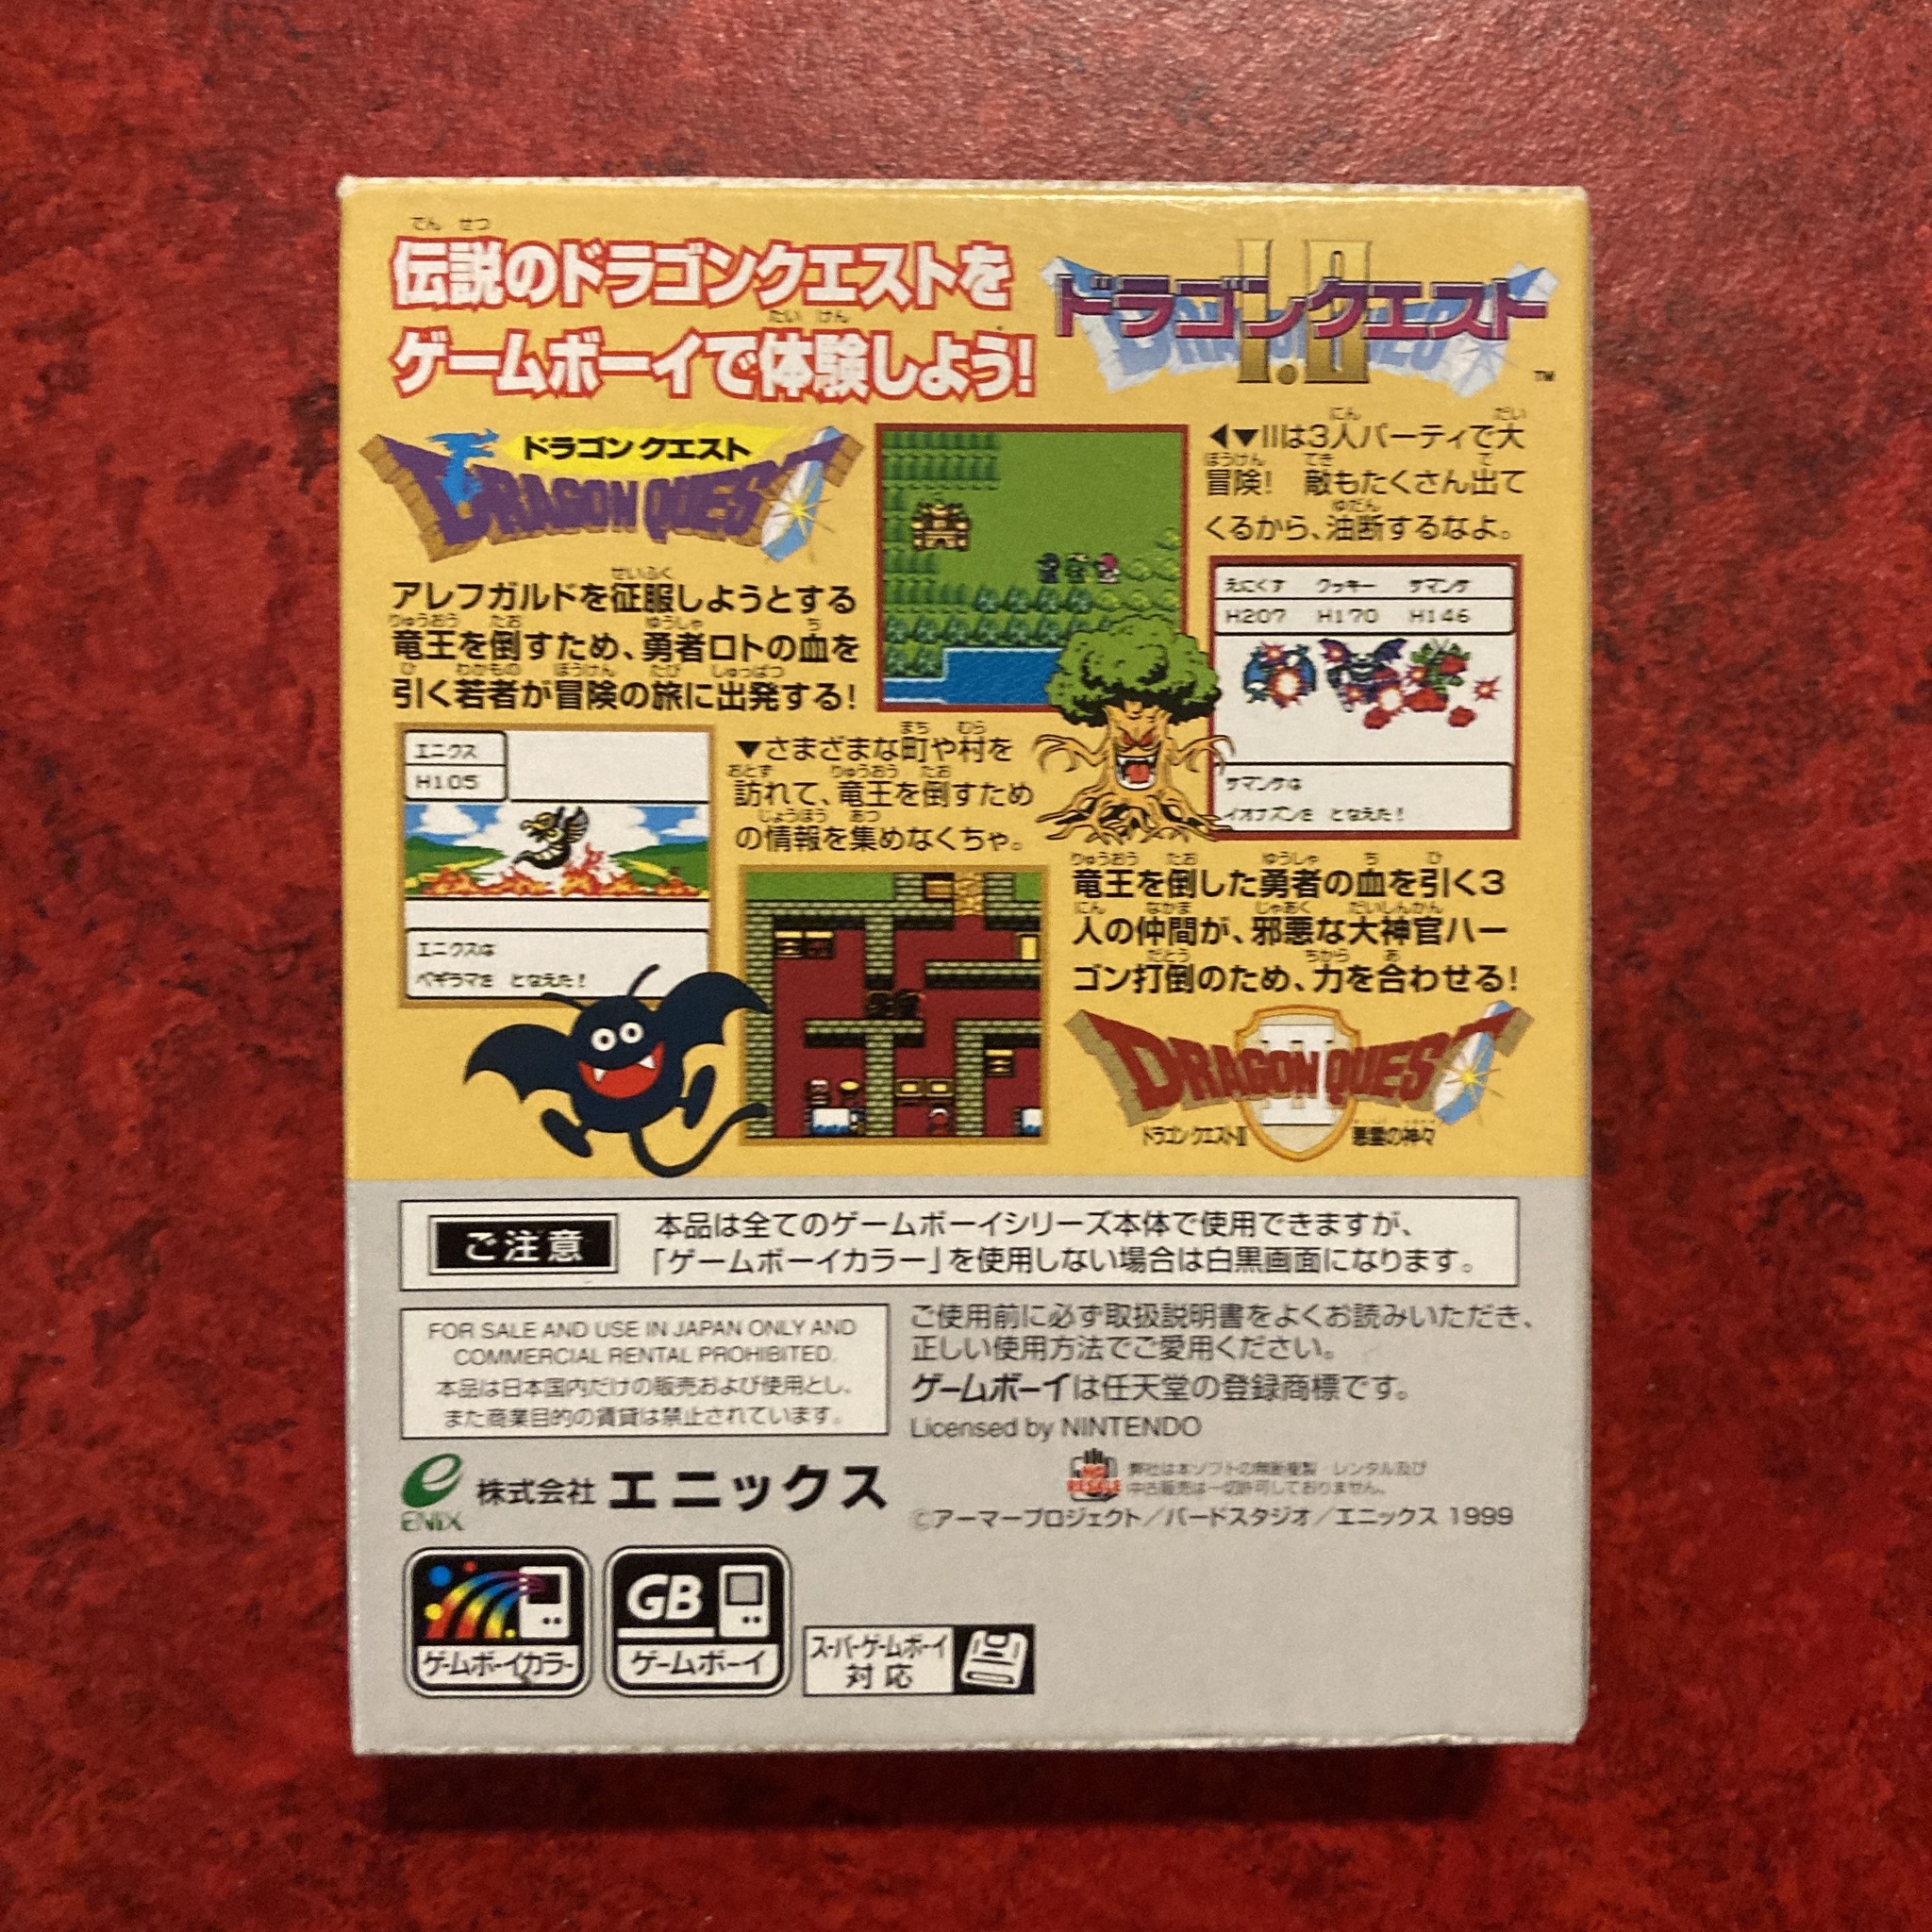 Dragon Quest I-II (Game Boy / GBC)